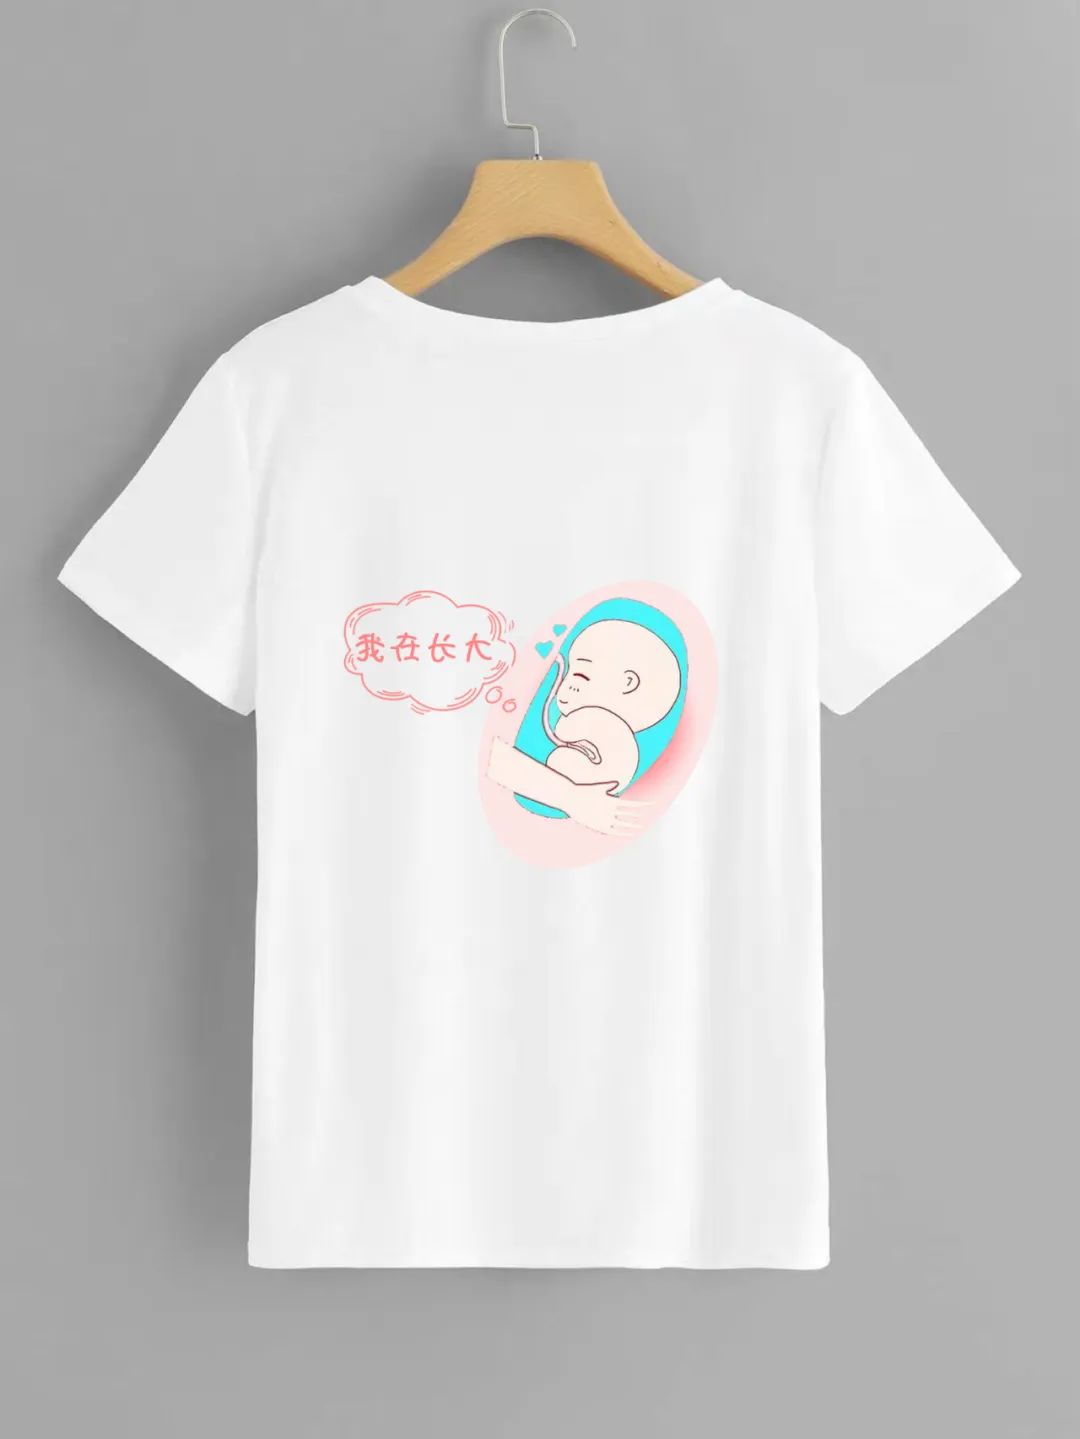 我在长大：广西陈姊妹的T恤设计